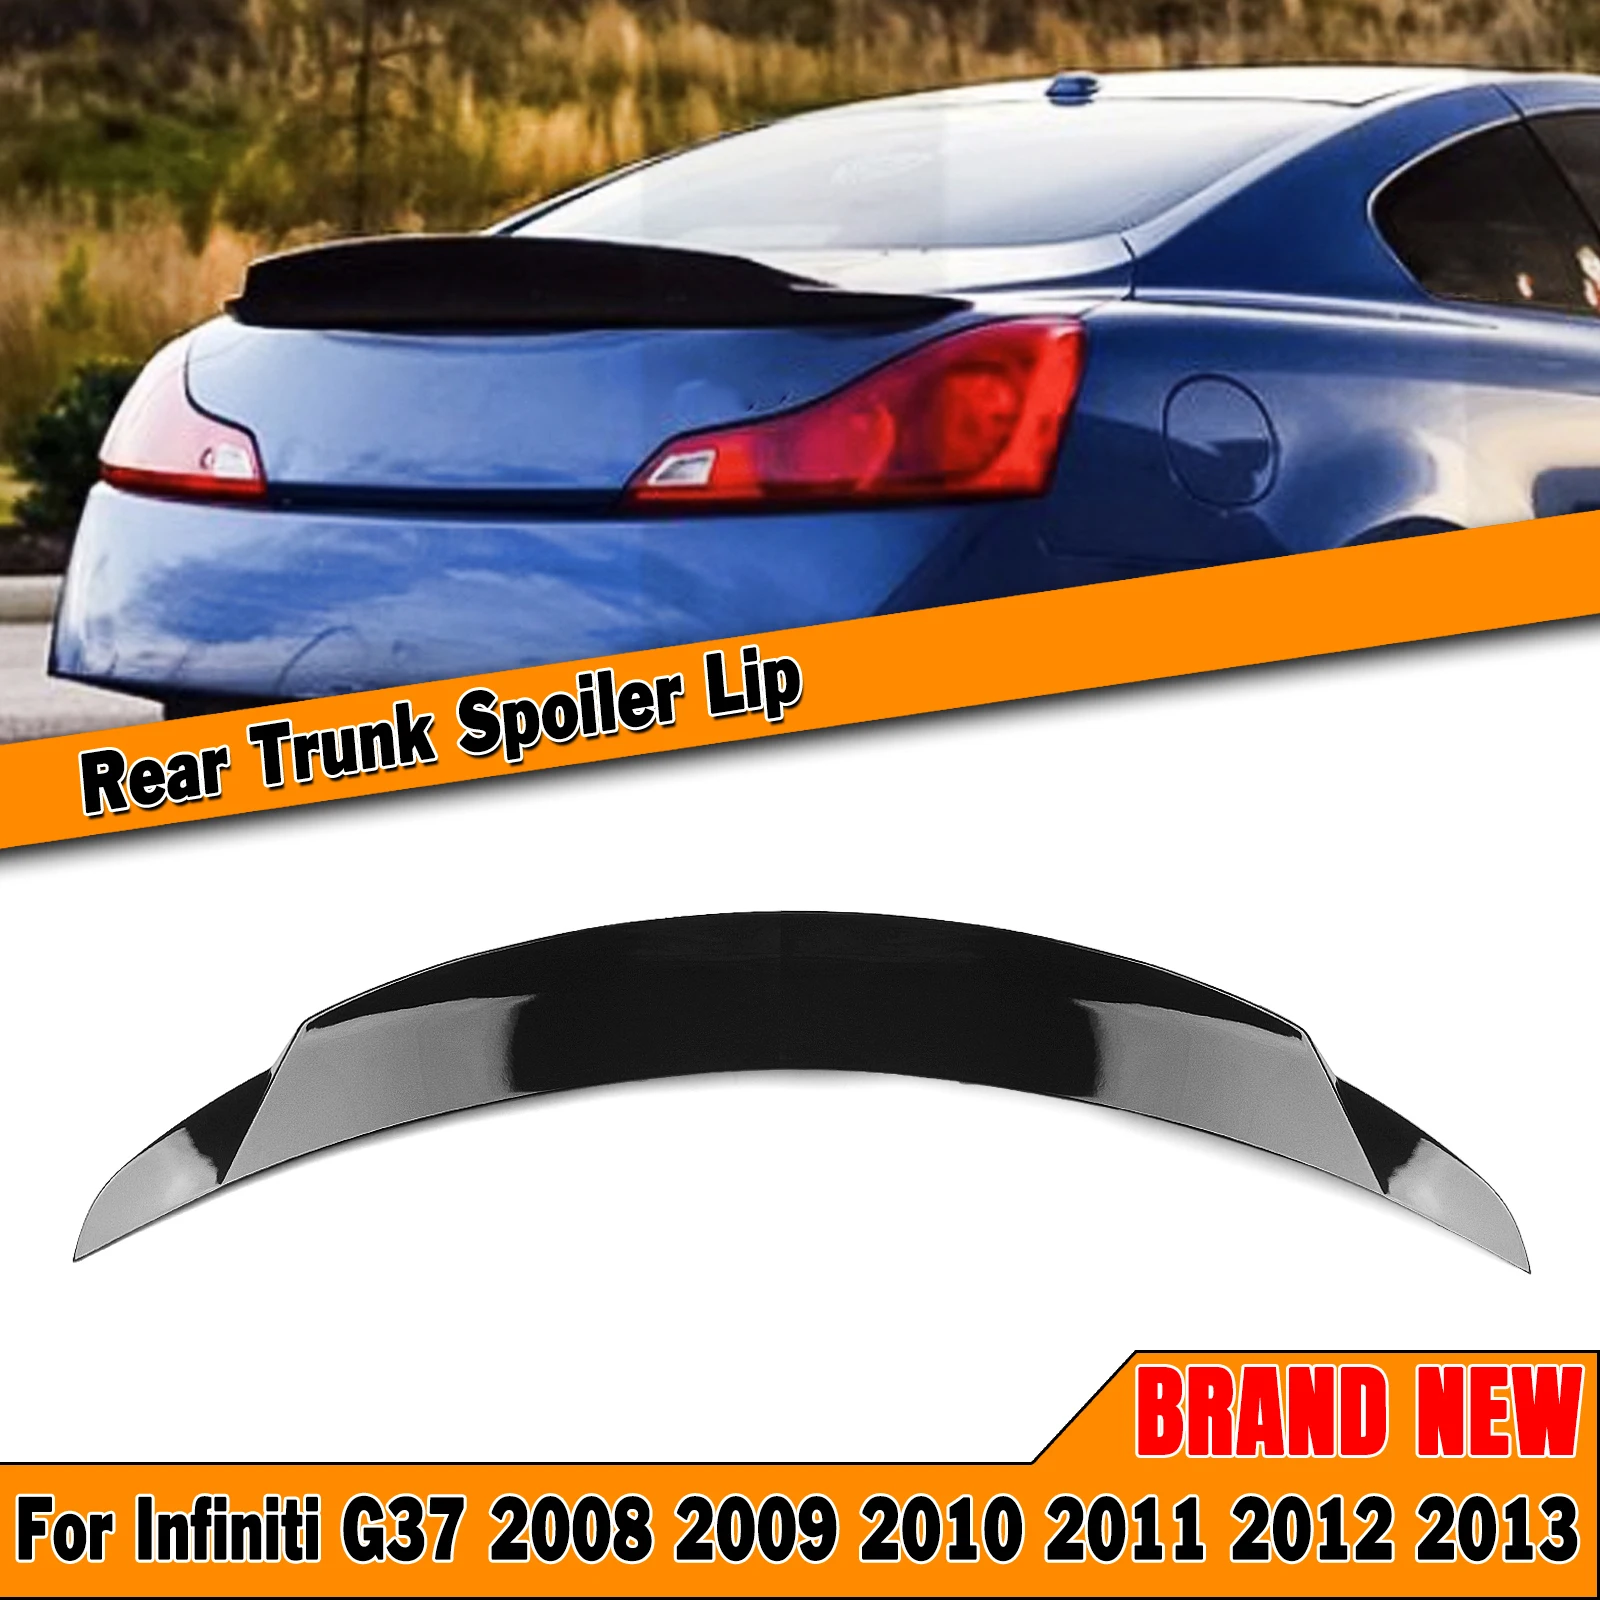 

Car Rear Trunk Spoiler Wing Tailgate Lid Splitter Lip High Kick For INFINITI G Series G37 V36 Q60 2 DOOR COUPE MODEL 2008-2013